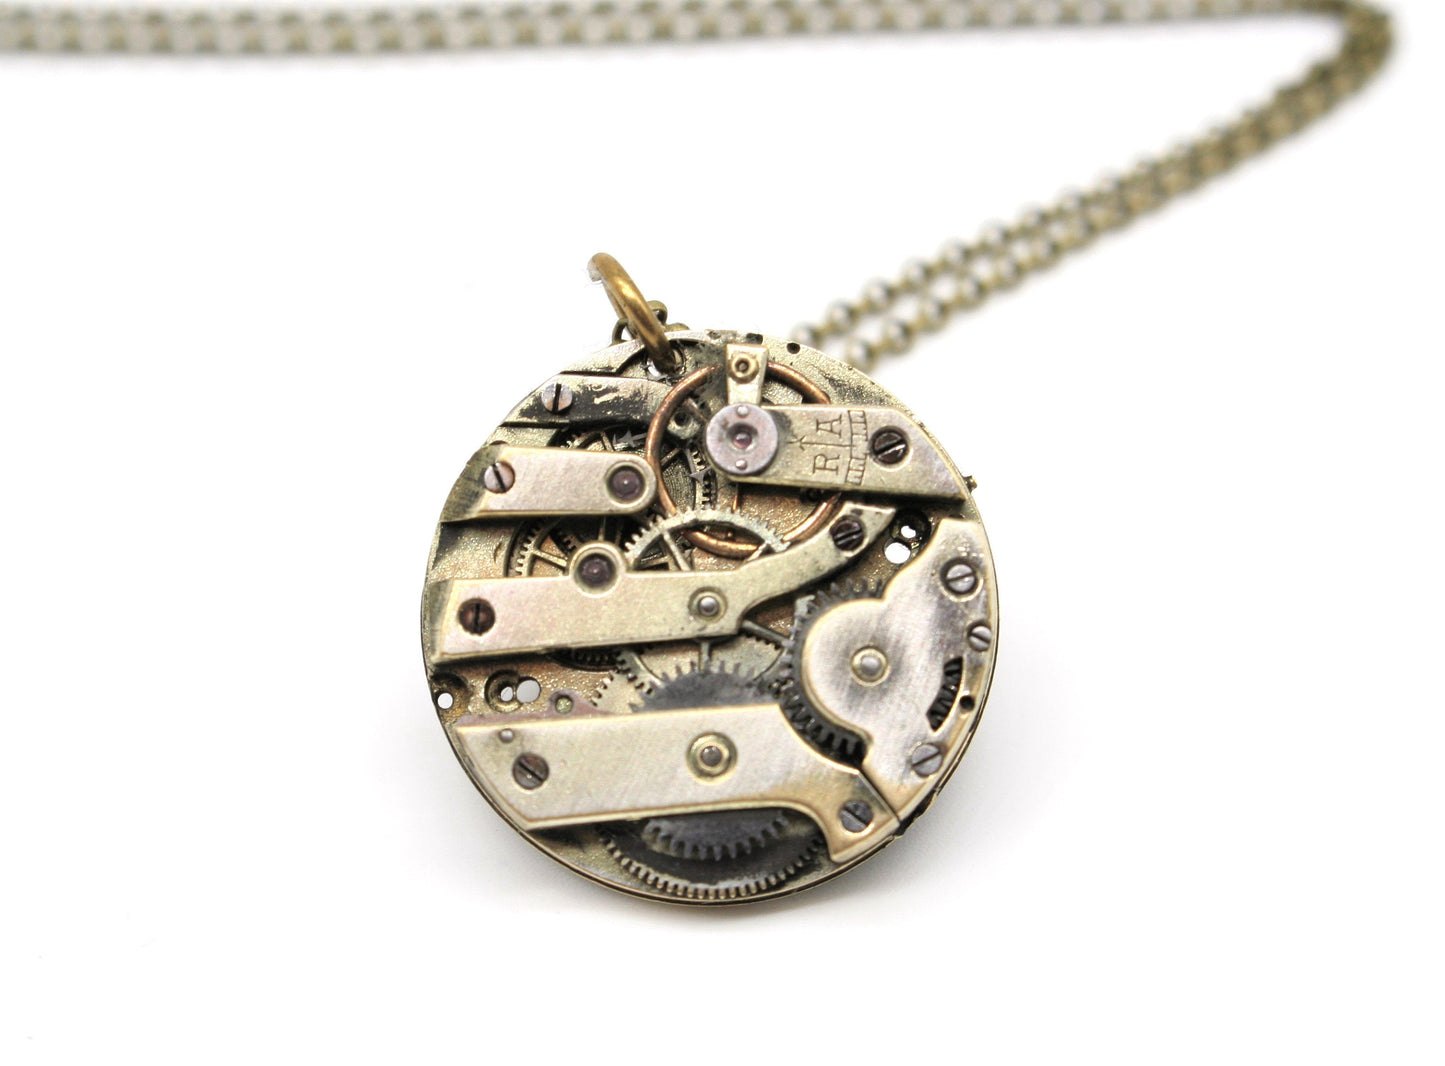 Collana con movimento vintage di orologio da taschino - ciondolo con meccanismo di orologio svizzero anni '30 art.277 - Glimoire